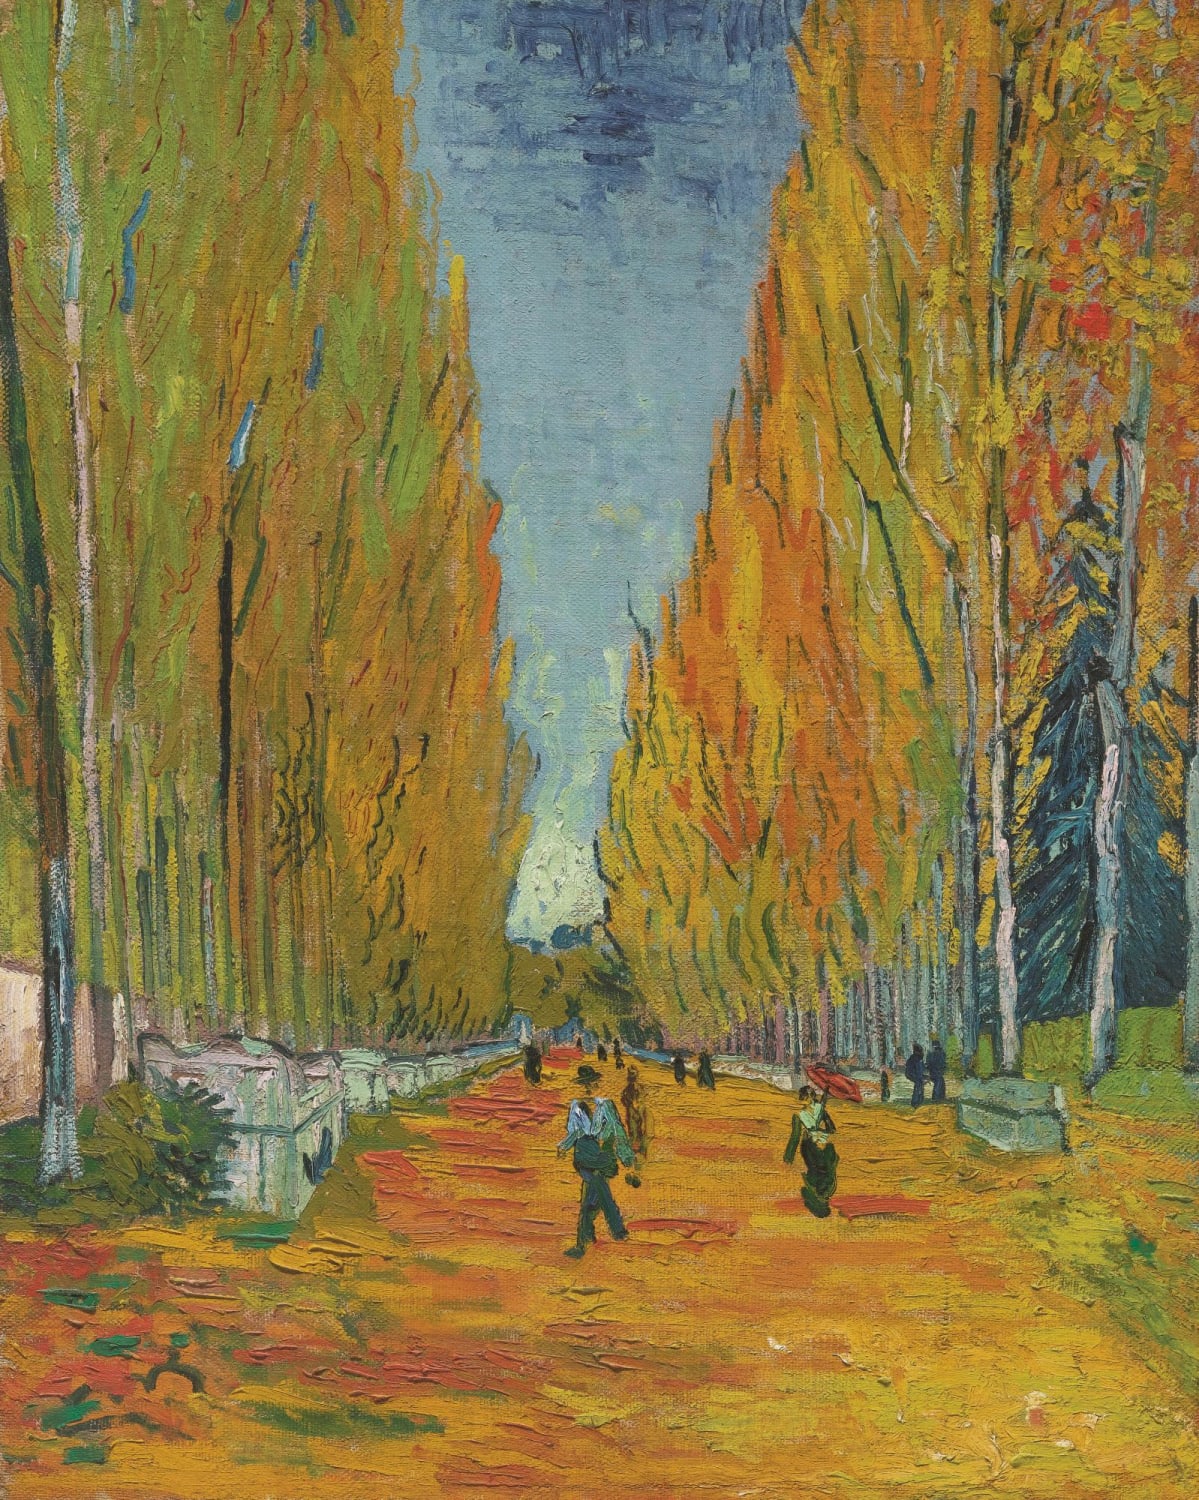 Vincent van Gogh, Les Alyscamps (Arles), 1888